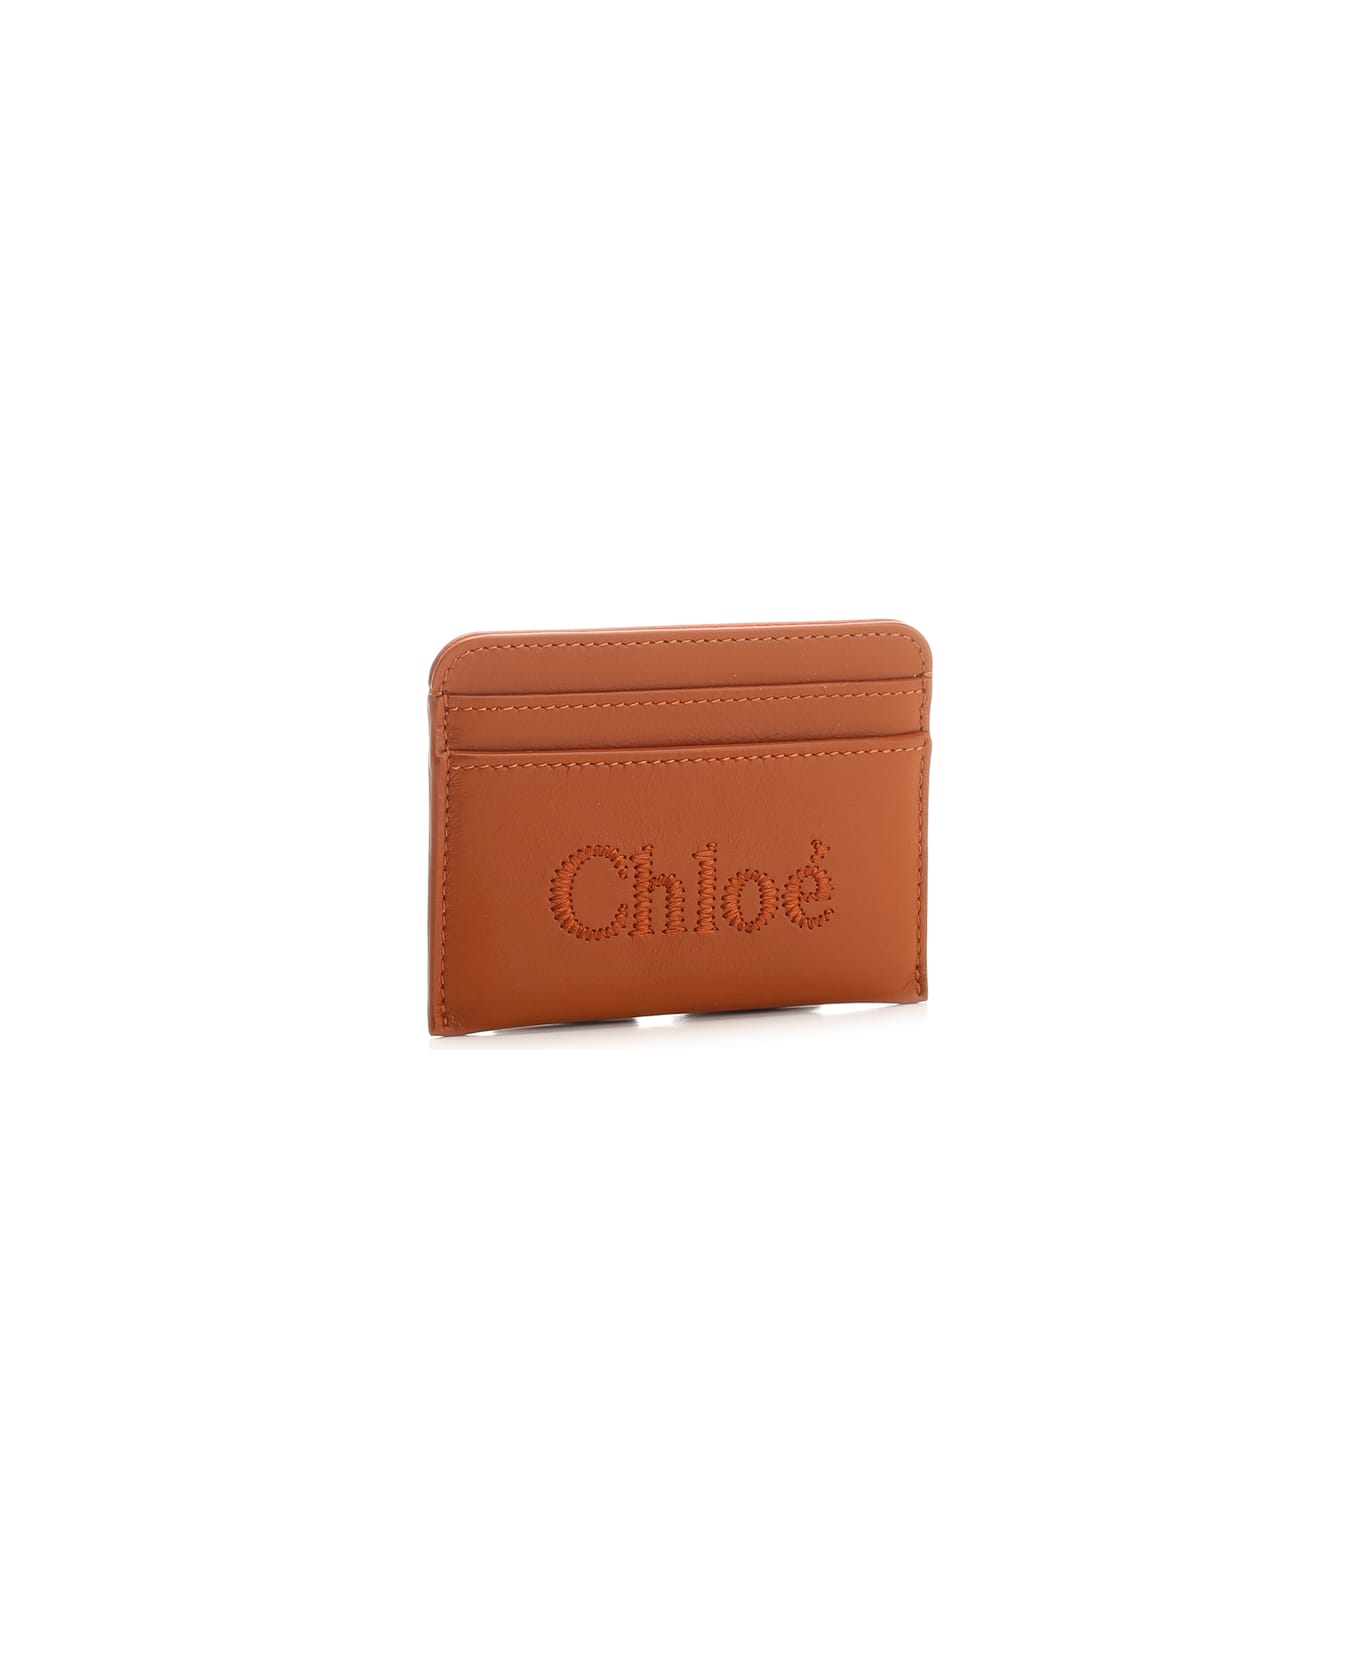 Chloé Card Slots - Brown